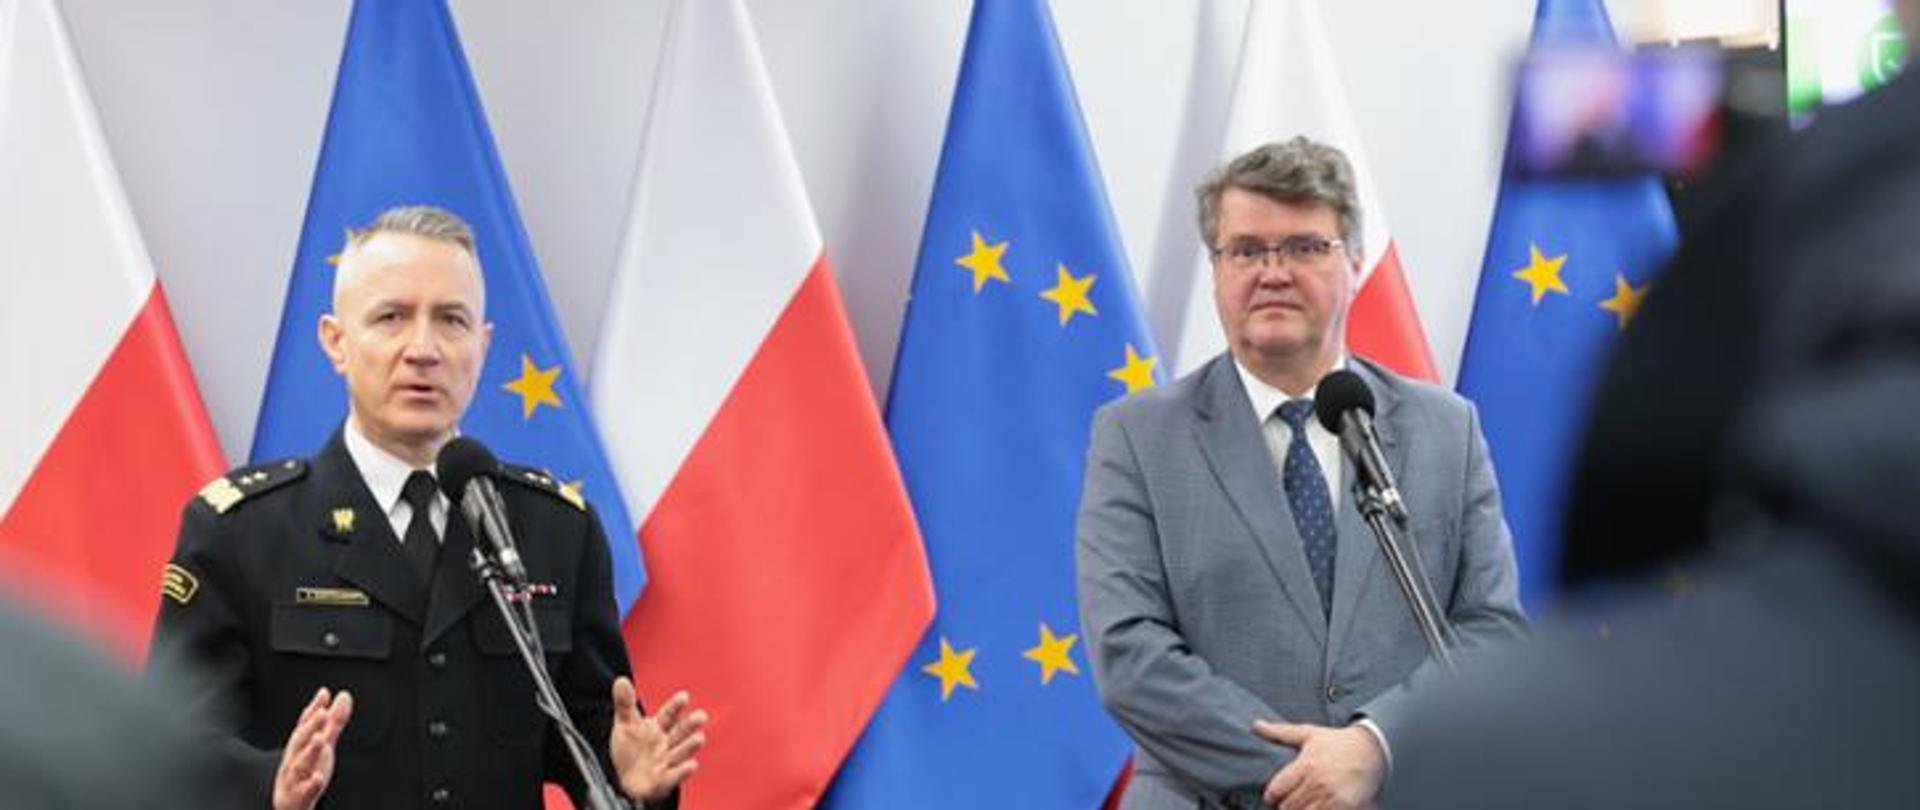 na zdjęciu widoczny jest wiceminister oraz komendant główny na tle flag Polski i Unii Europejskiej